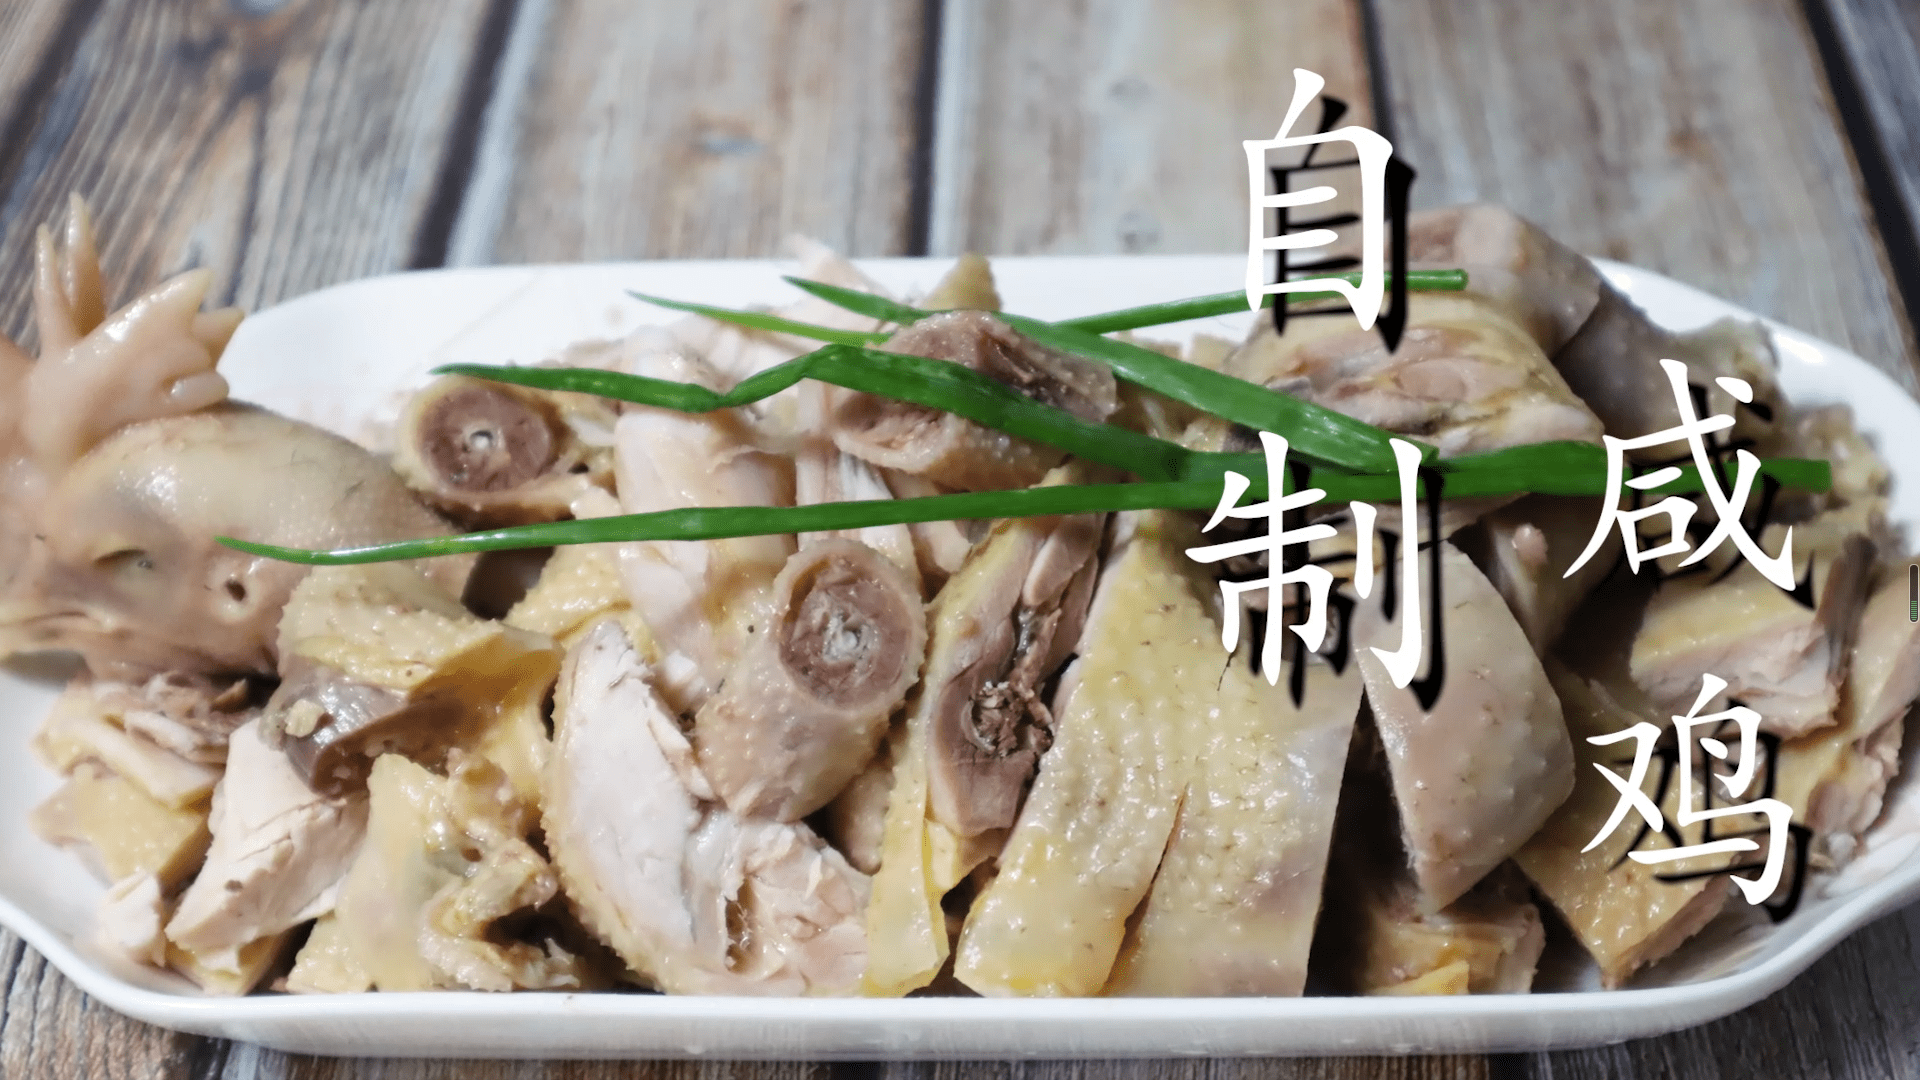 自制传统盐水鸡,1抹2腌3入锅,做法简单详细,鸡肉皮脆咸香